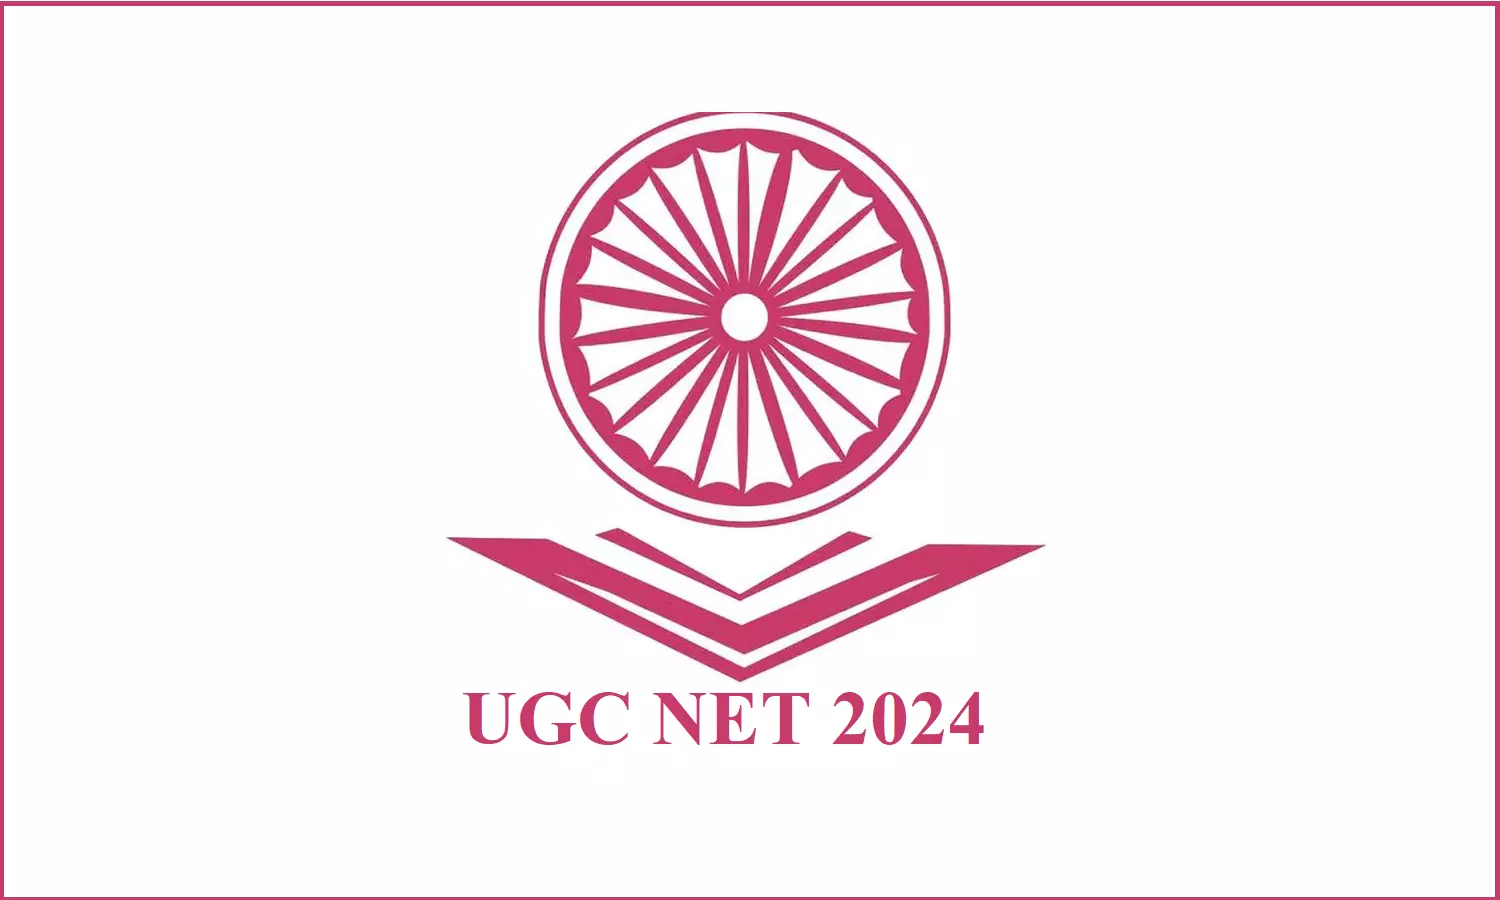 शिक्षा मंत्रालय ने UGC के ड्राफ्ट दिशा निर्देशों पर बढ़ते विवाद को देखते हुए उनका ये प्रस्ताव खारिज किया